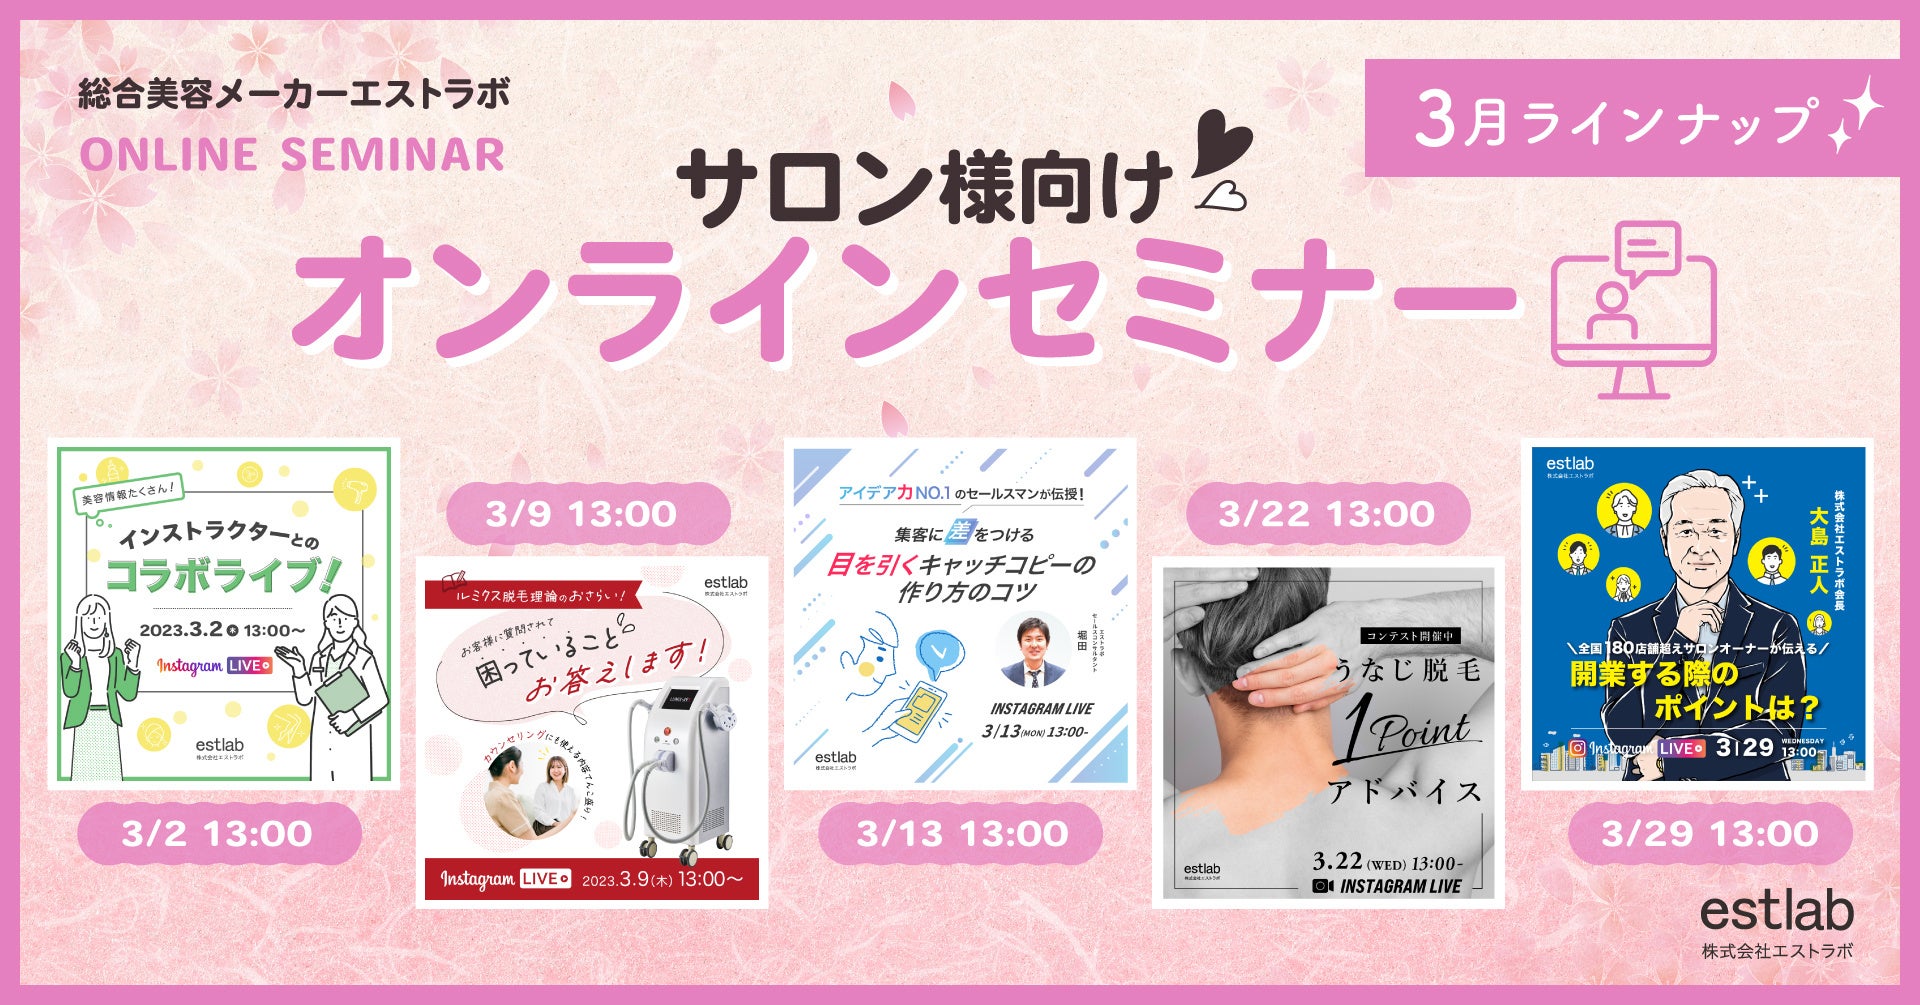 【Qoo10メガ割】韓国コスメブランド「FOREUL」(フォーウル)がセット製品購入で、大幅割引適用!!